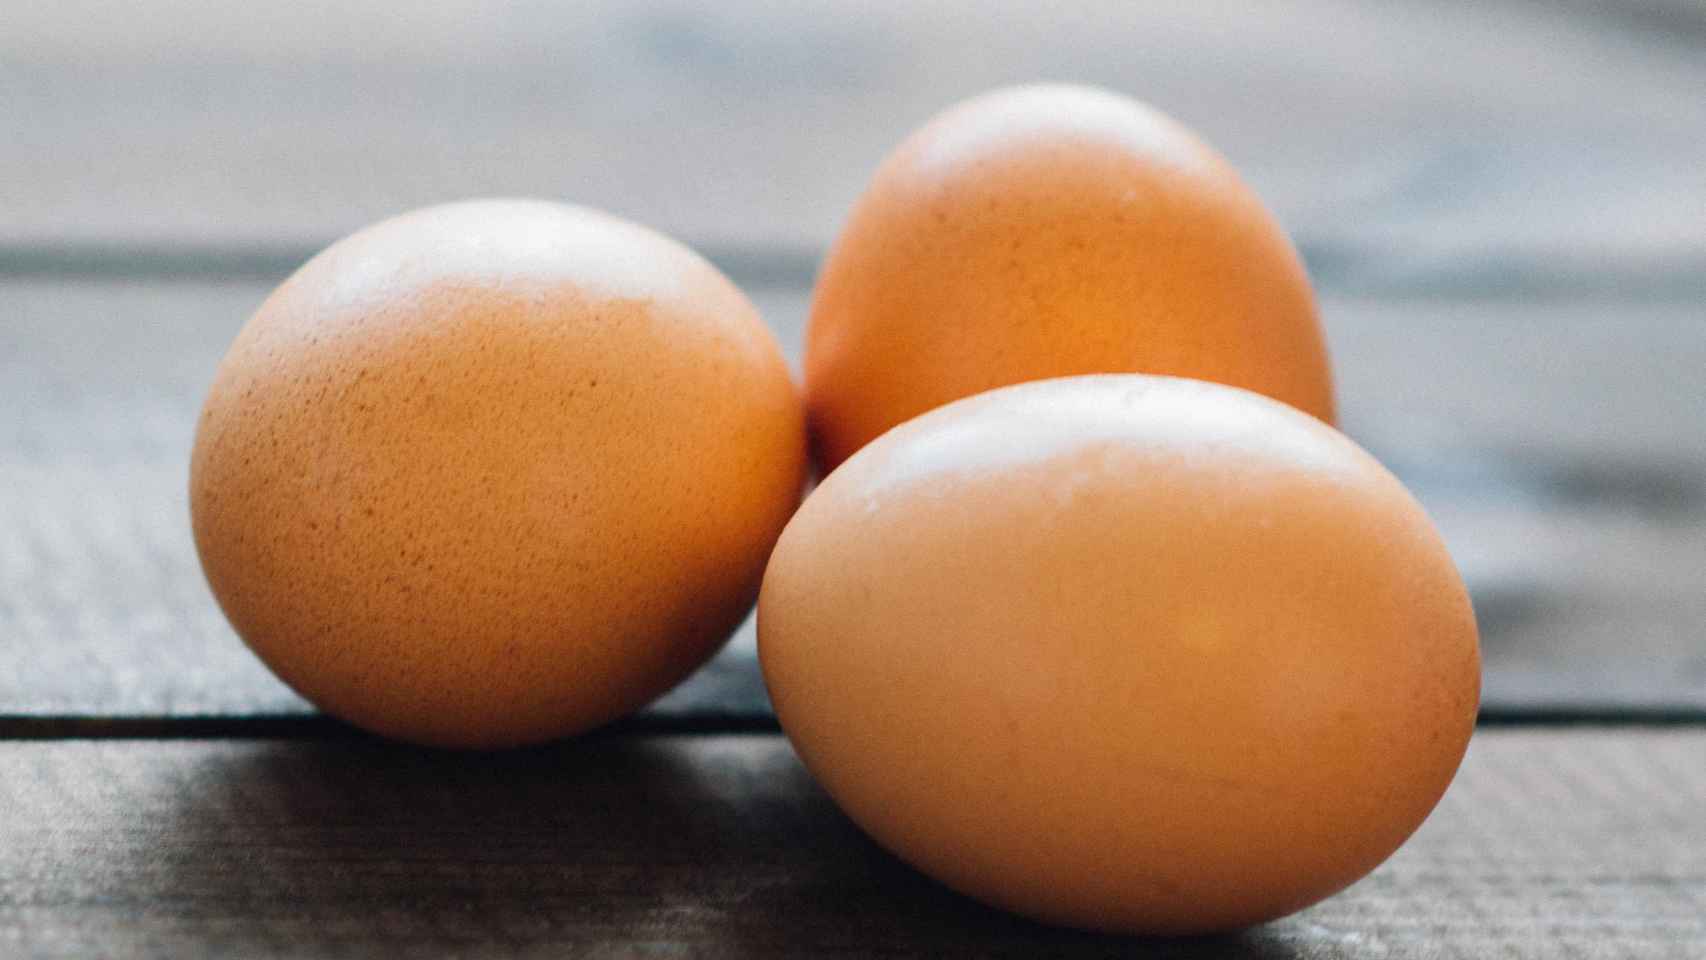 Los productos que tienen huevo son especialmente peligrosos.